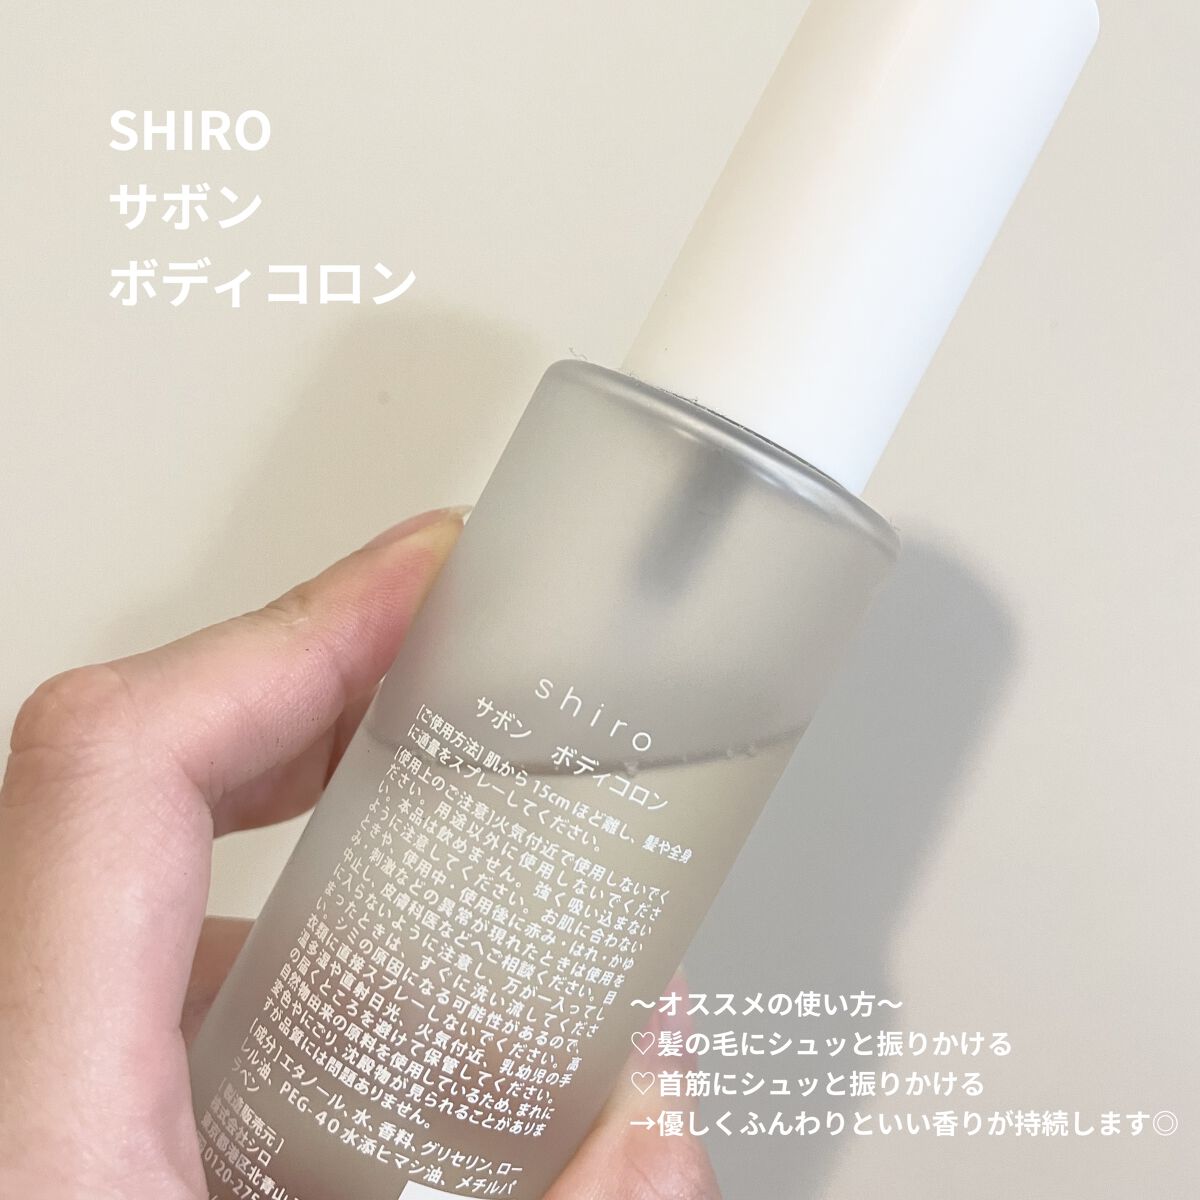 shiro ボディコロン サボン ボディフレグランス 石鹸の香り香水